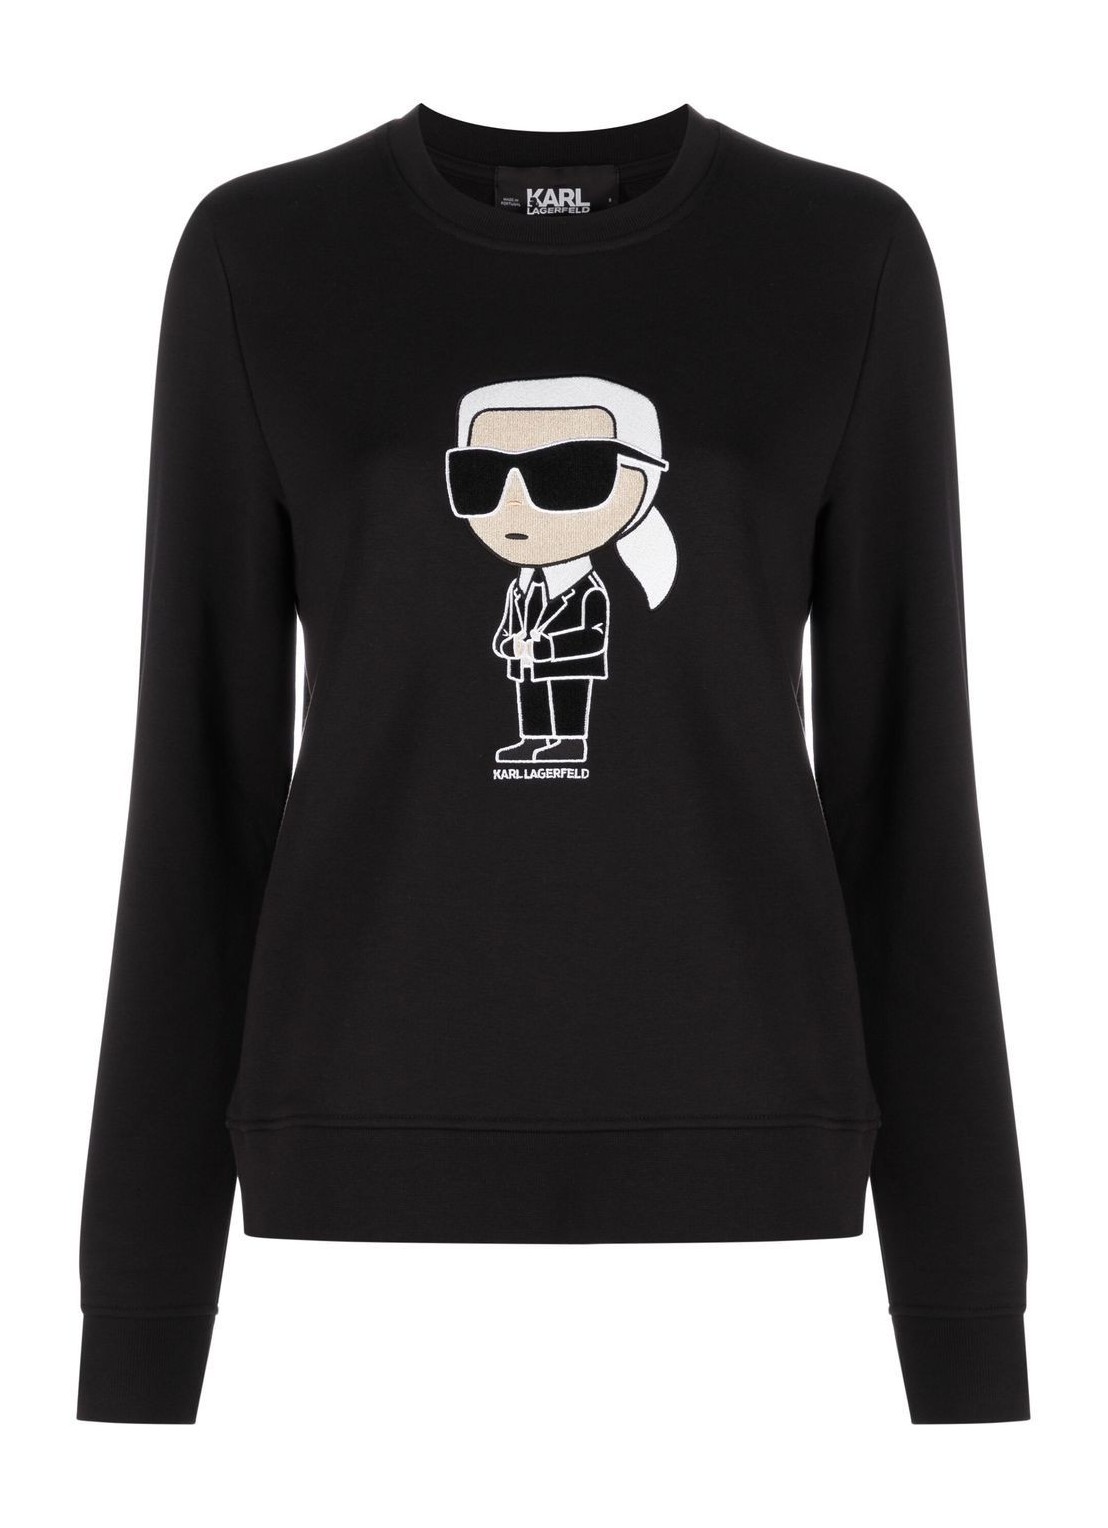 Sudadera karl lagerfeld sweater woman ikonik 2.0 karl sweatshirt 230w1800 999 talla negro
 